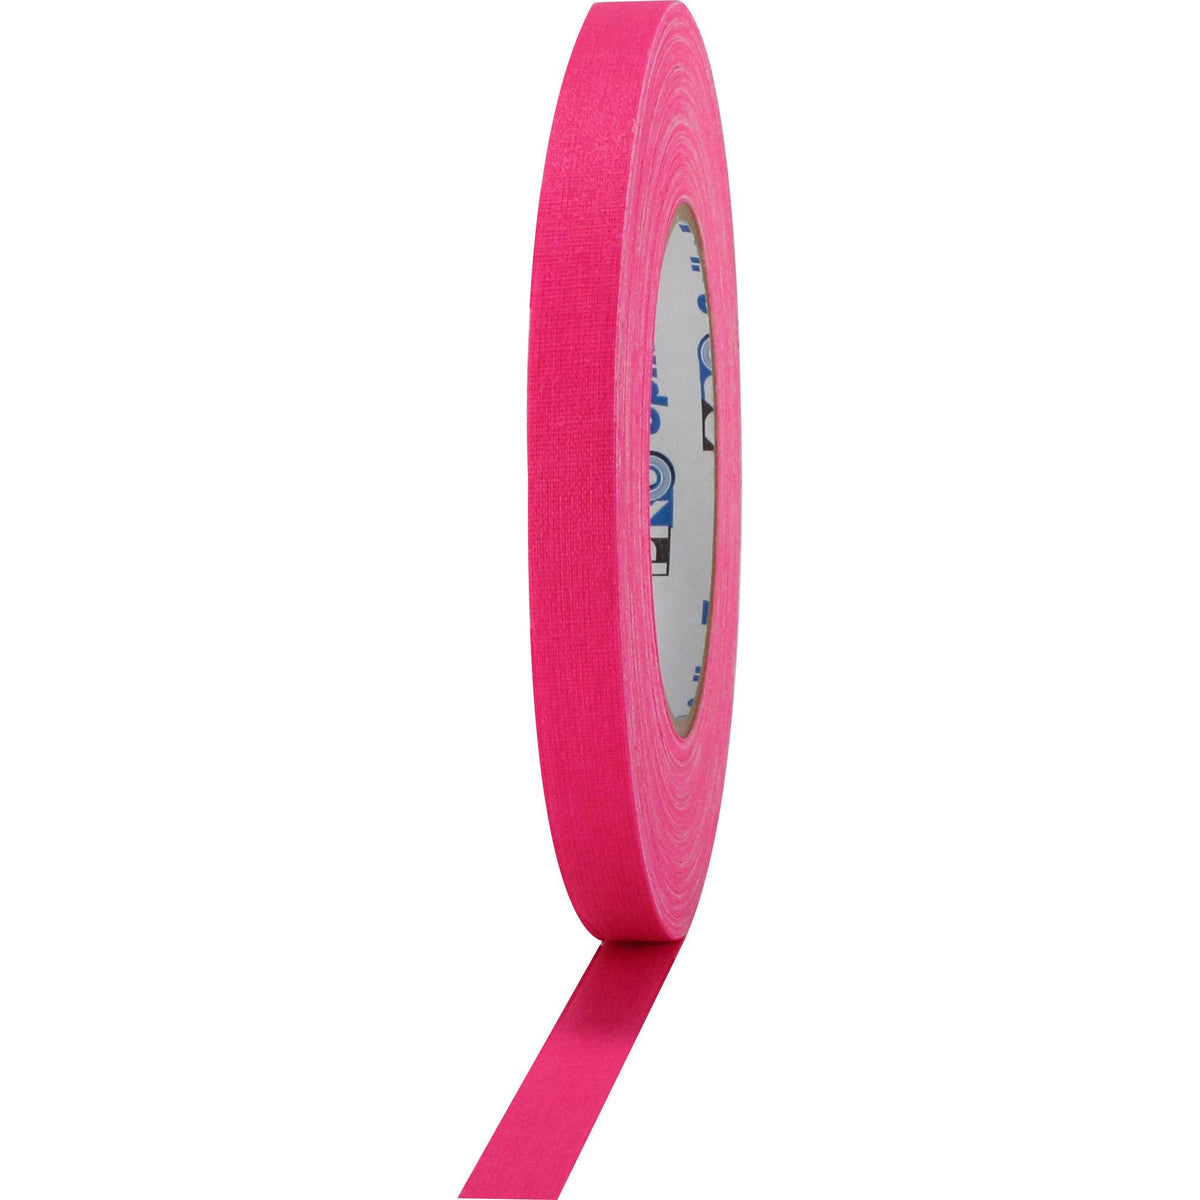 Cinta gafer tesa color rosa fluorescente de 5 cm de ancho y 25m de largo